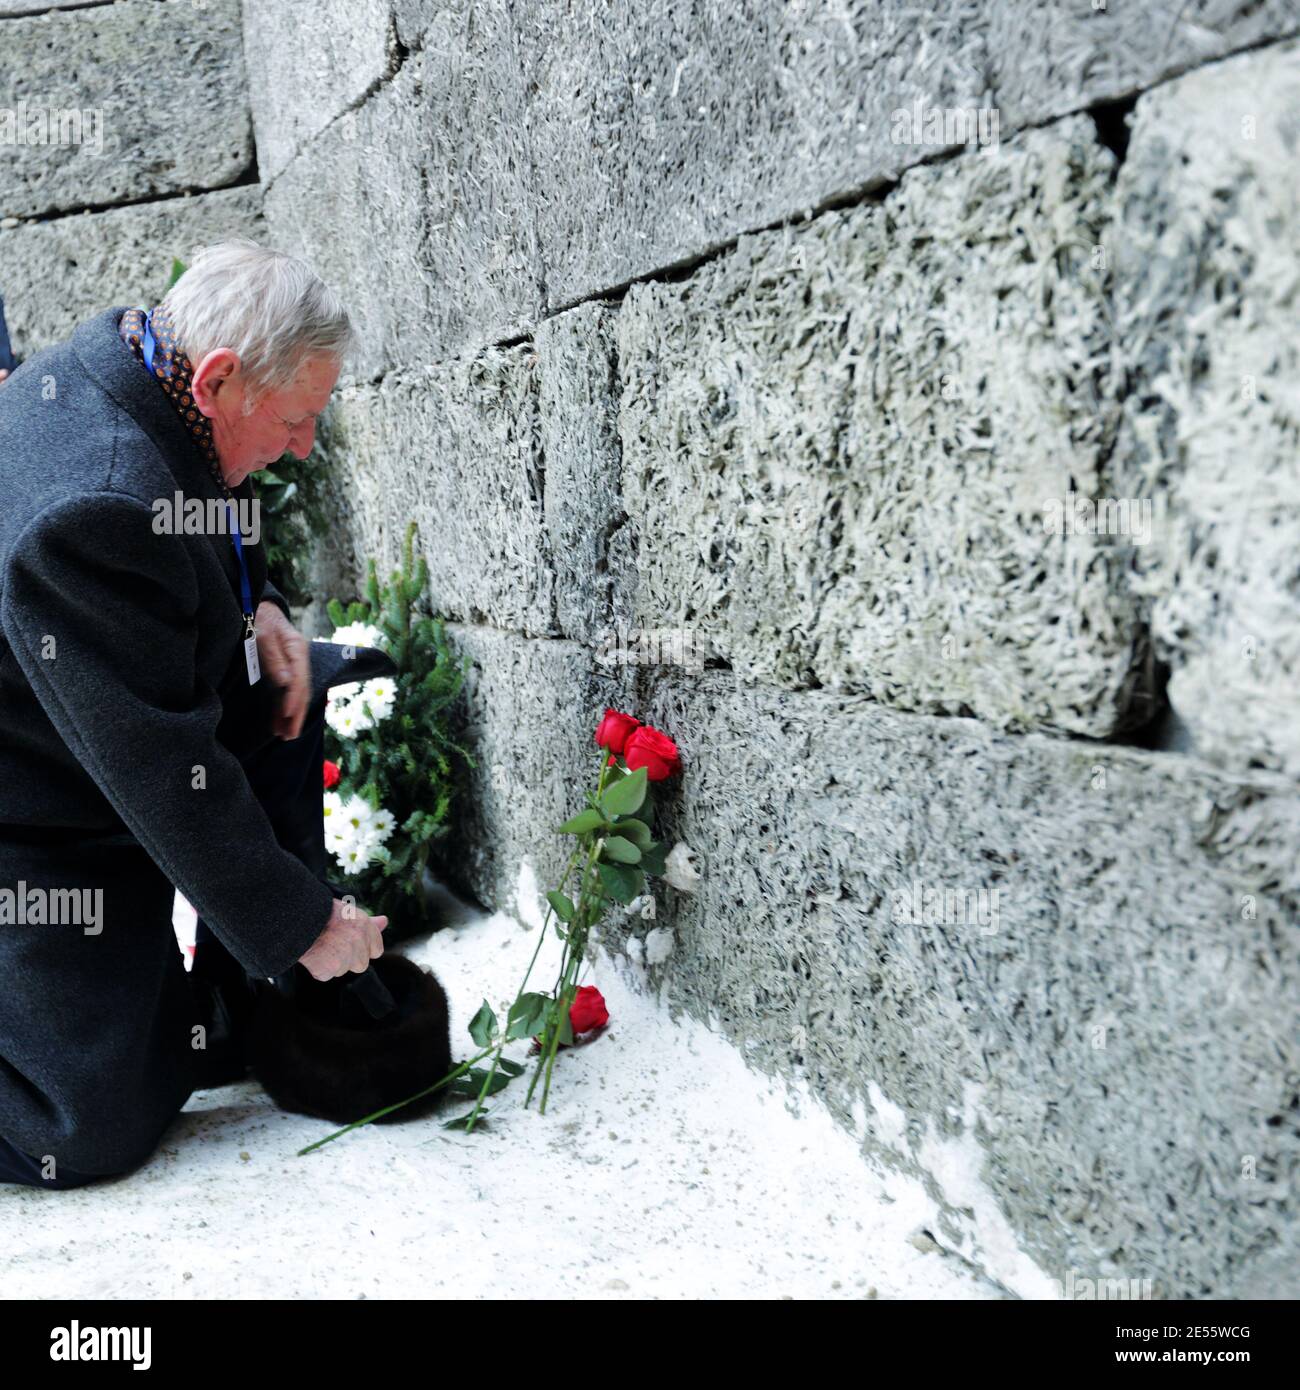 Oswiecim, Polen - 27. Januar 2017: 73. Jahrestag der Befreiung von Auschwitz-Birkenau. Der Überlebende besucht das Vernichtungslager Auschwitz.T Stockfoto